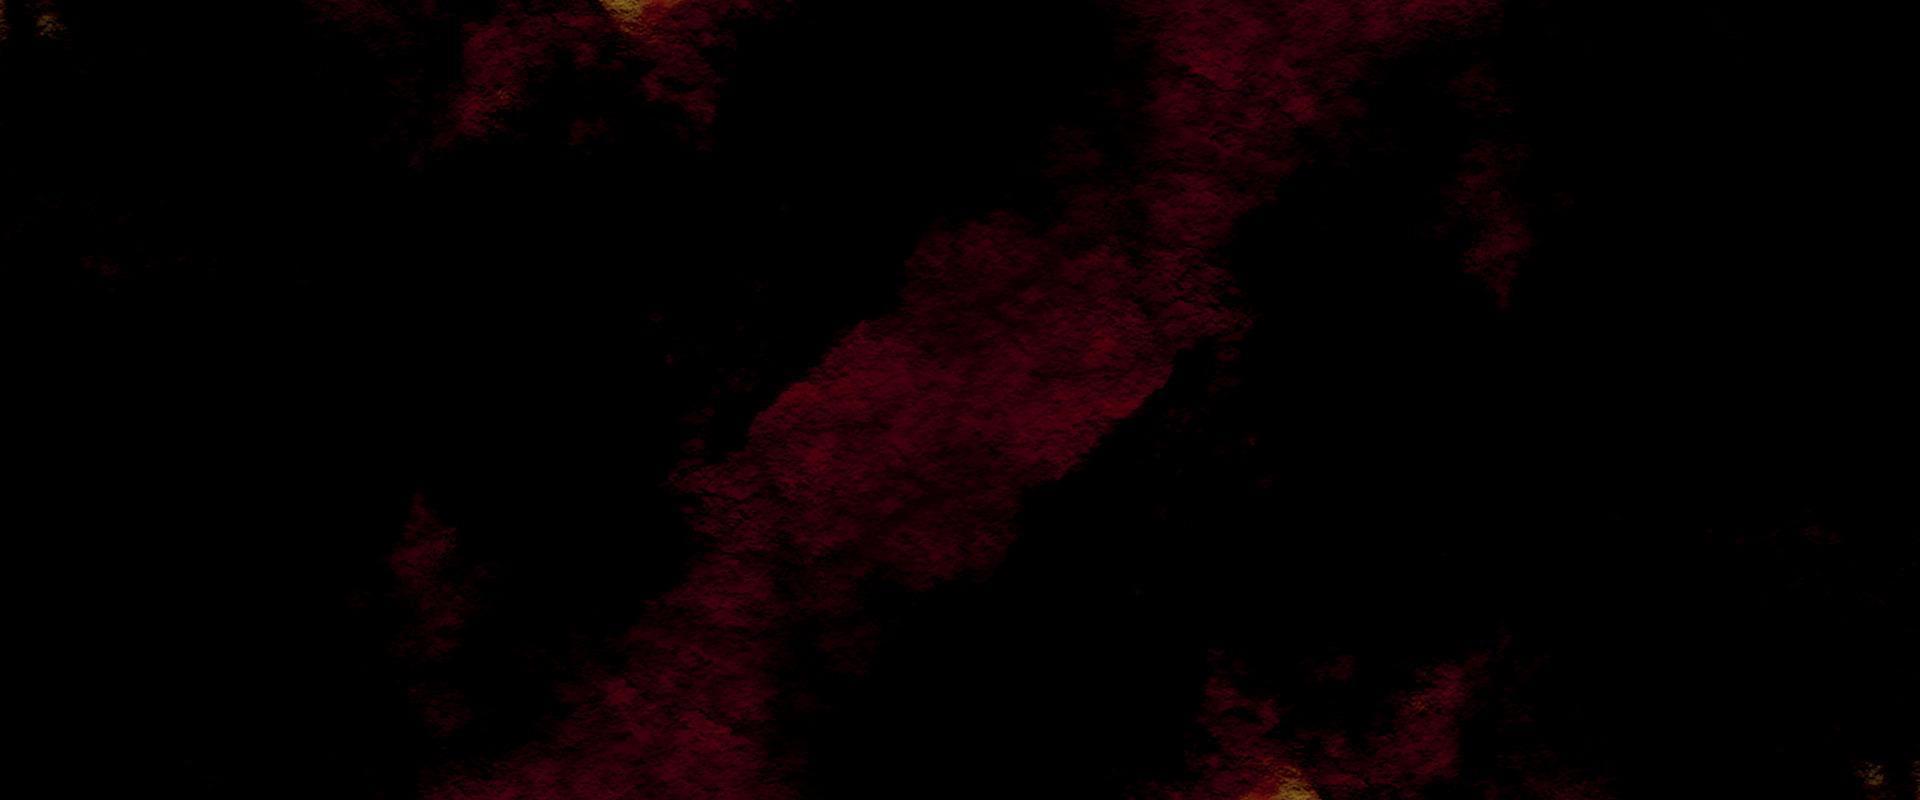 fondo abstracto de acuarela roja. fondo de piedra de roca negra y roja. Fondo de pared de piedra de textura grunge rojo. fondo de cielo de galaxia acuarela. brasas ardientes y superficie de grietas. textura de pared vieja. vector